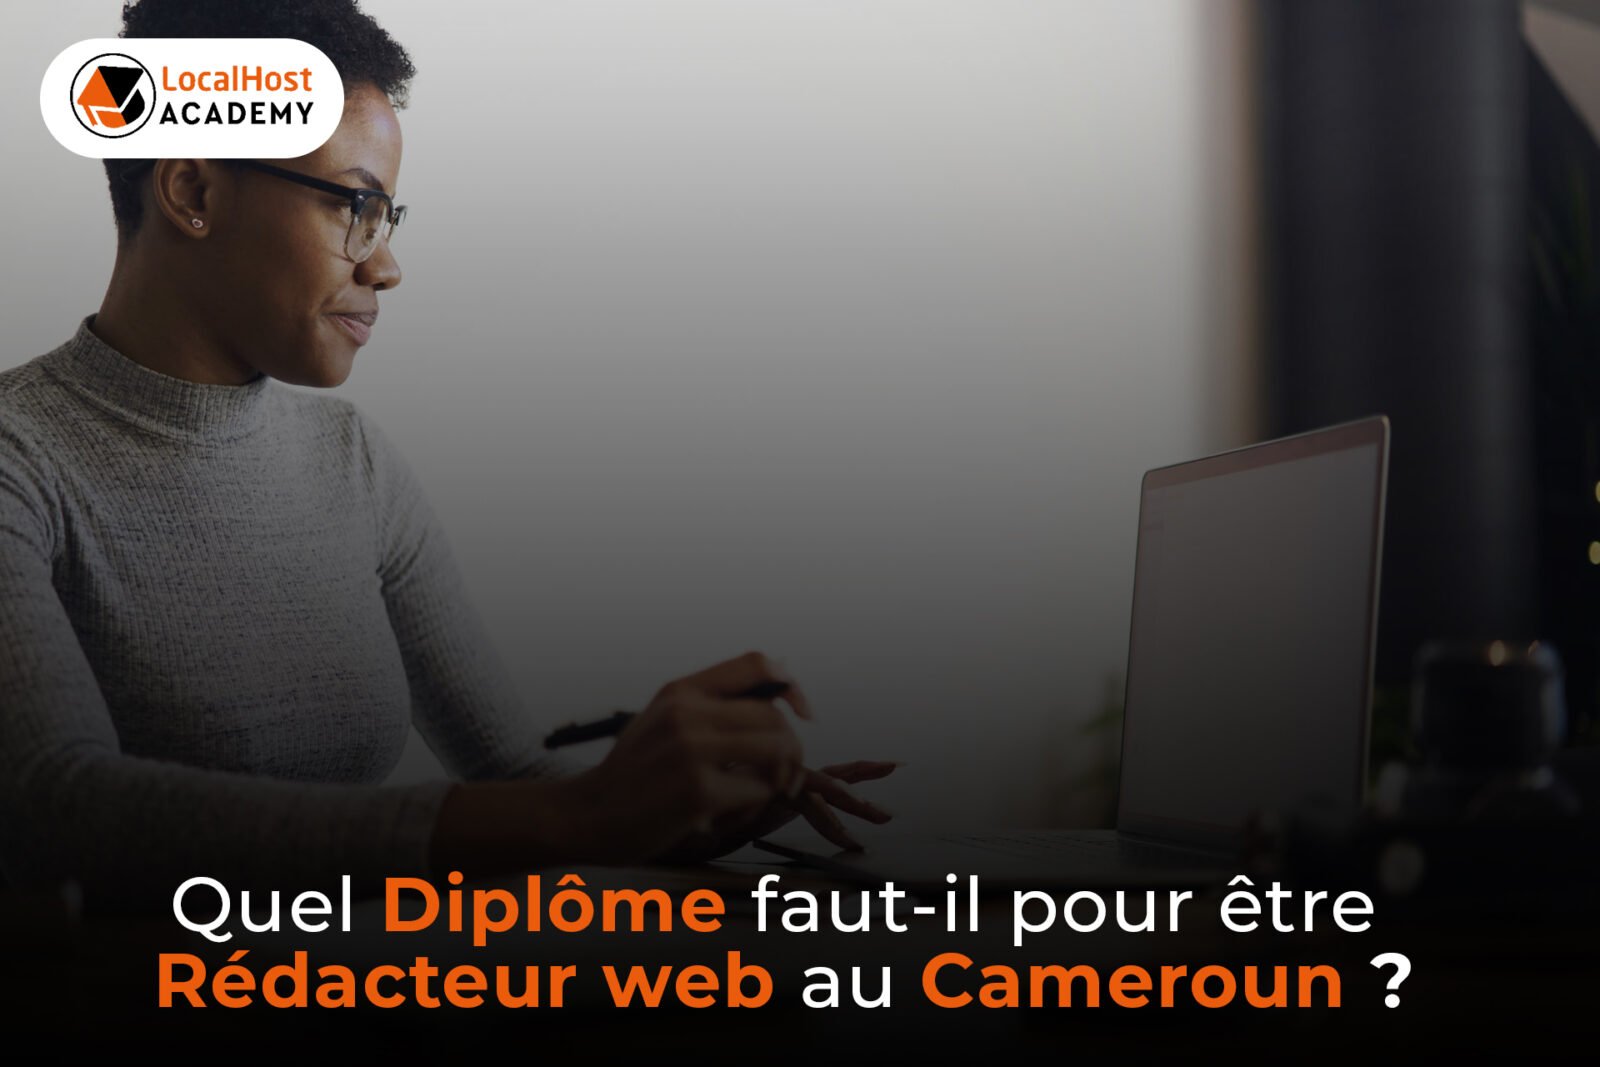 Quel diplôme faut-il avoir pour être rédacteur web au Cameroun